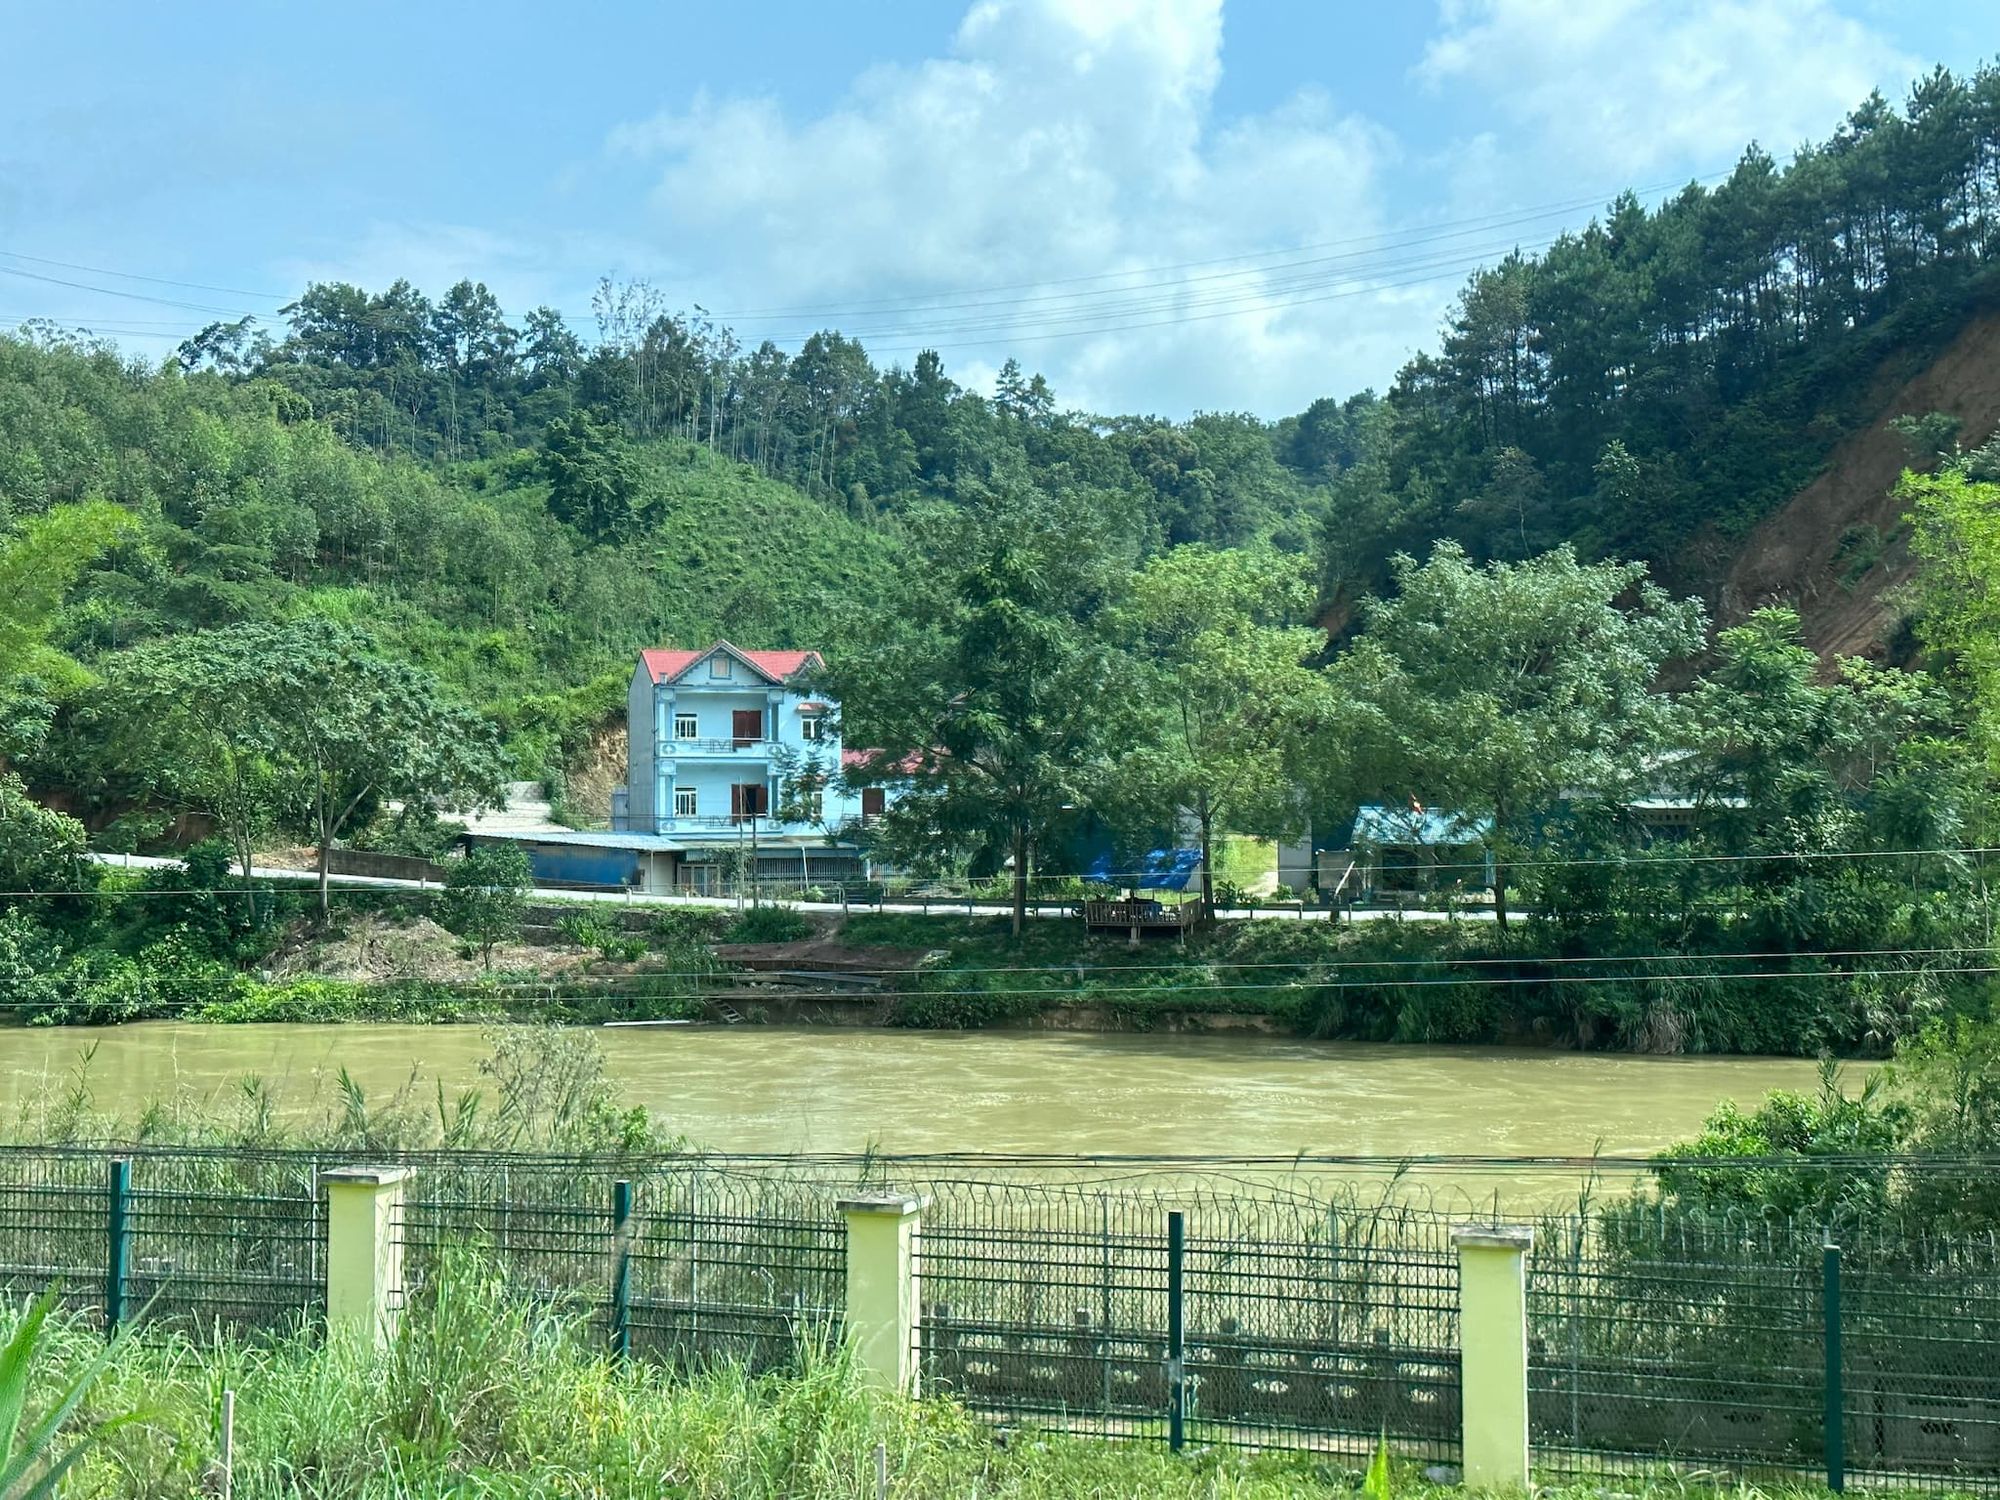 归春河对岸的越南民宅，看着挺不错的。可能早期走私发达，都积累了不少财富。